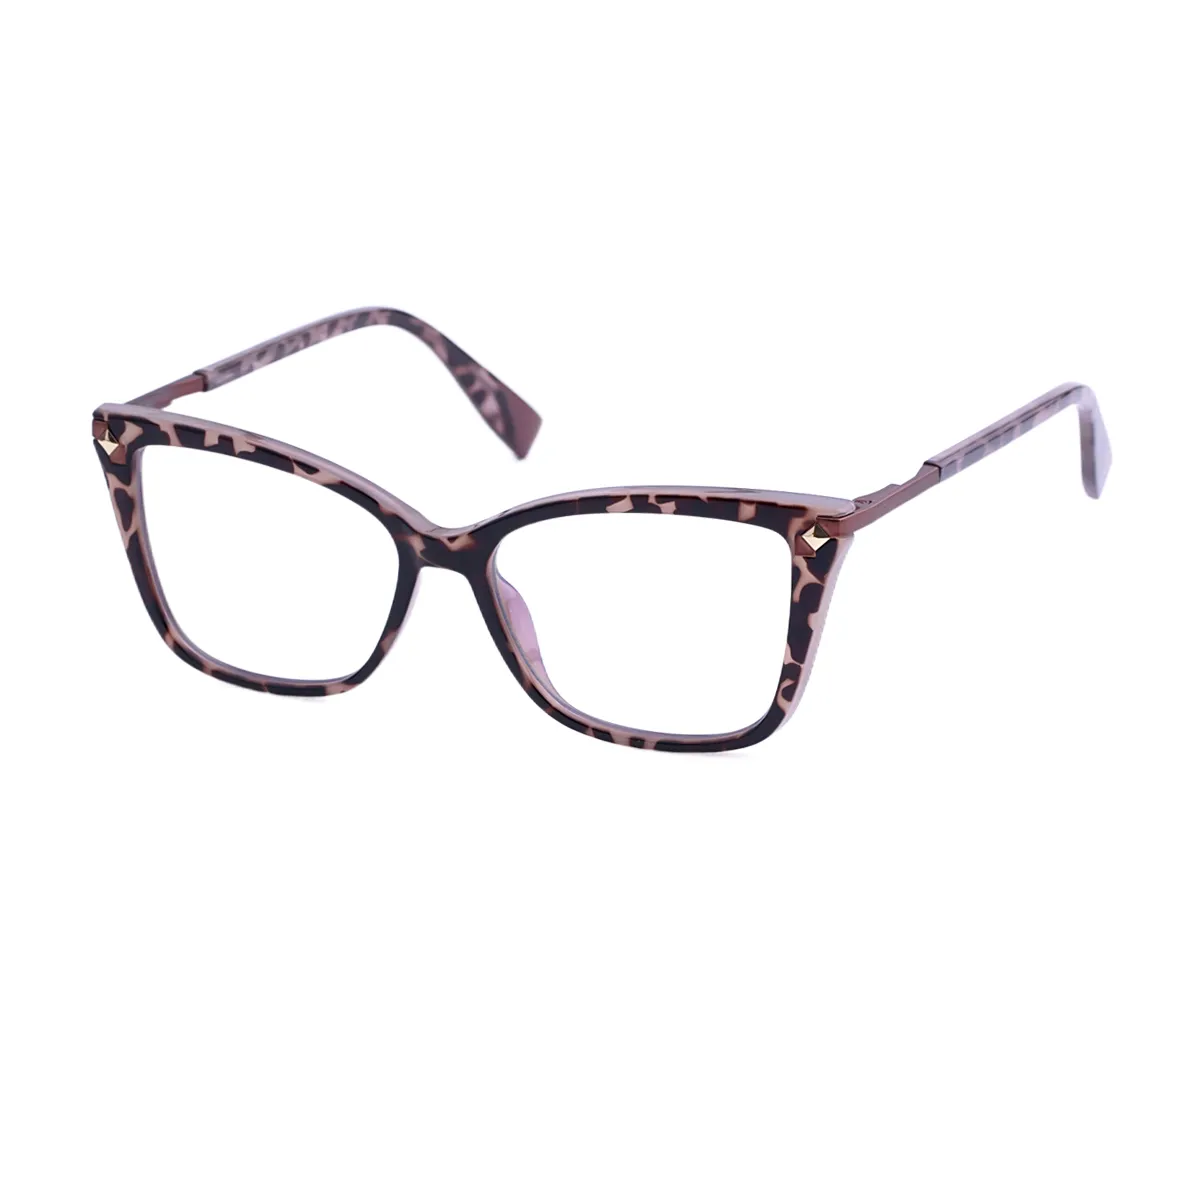 Arabela - Cat-eye Tortoiseshell Glasses for Women - EFE